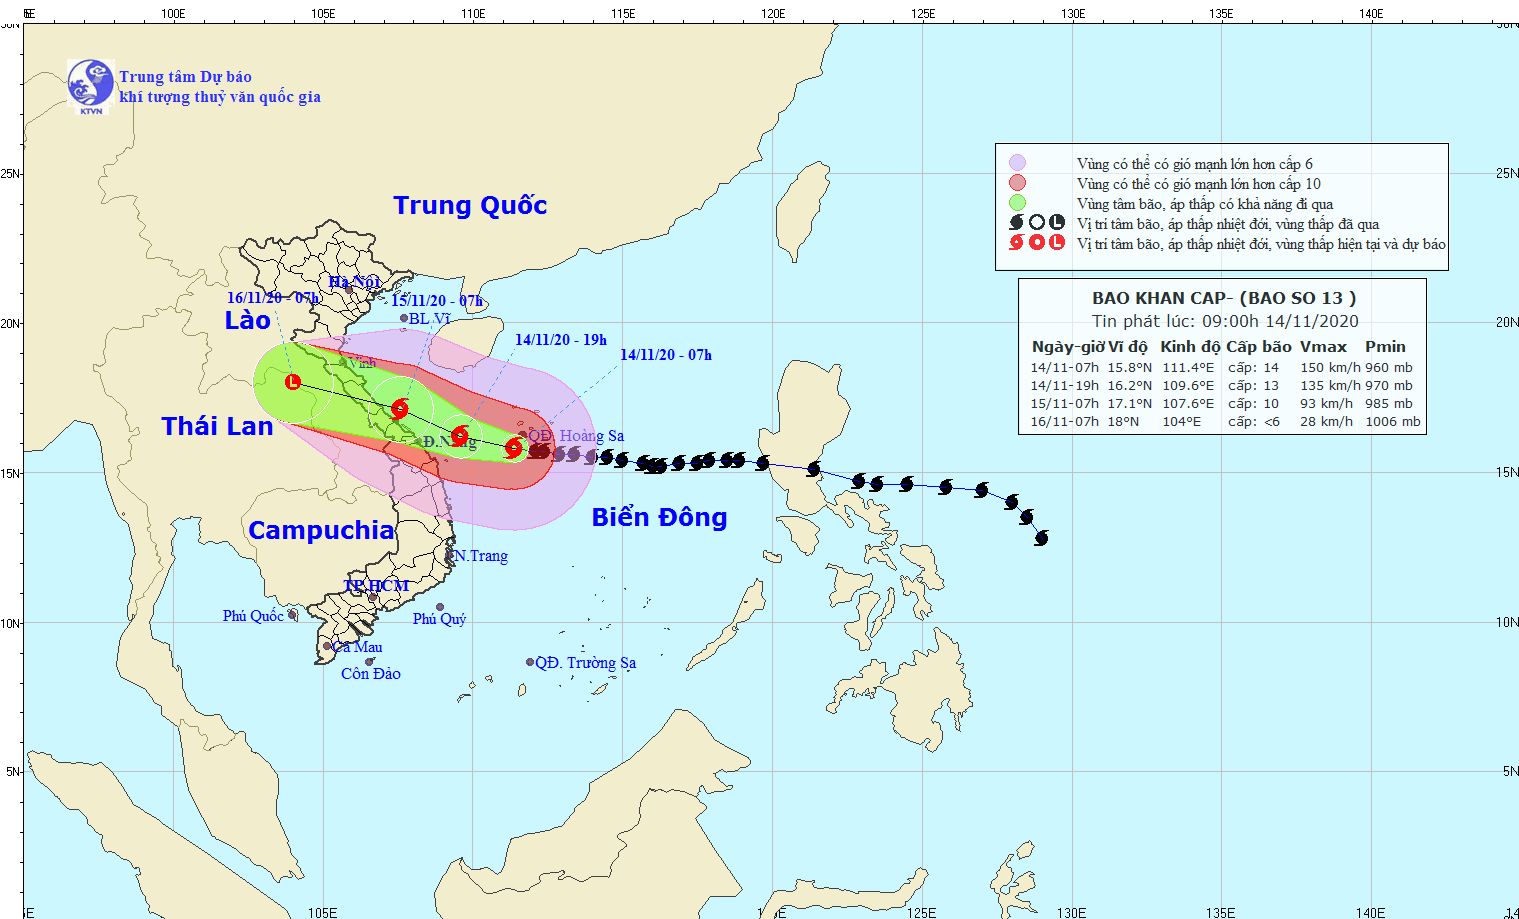 Tối nay, bão số 13 vào vùng biển Hà Tĩnh - Quảng Ngãi, gió giật cấp 15